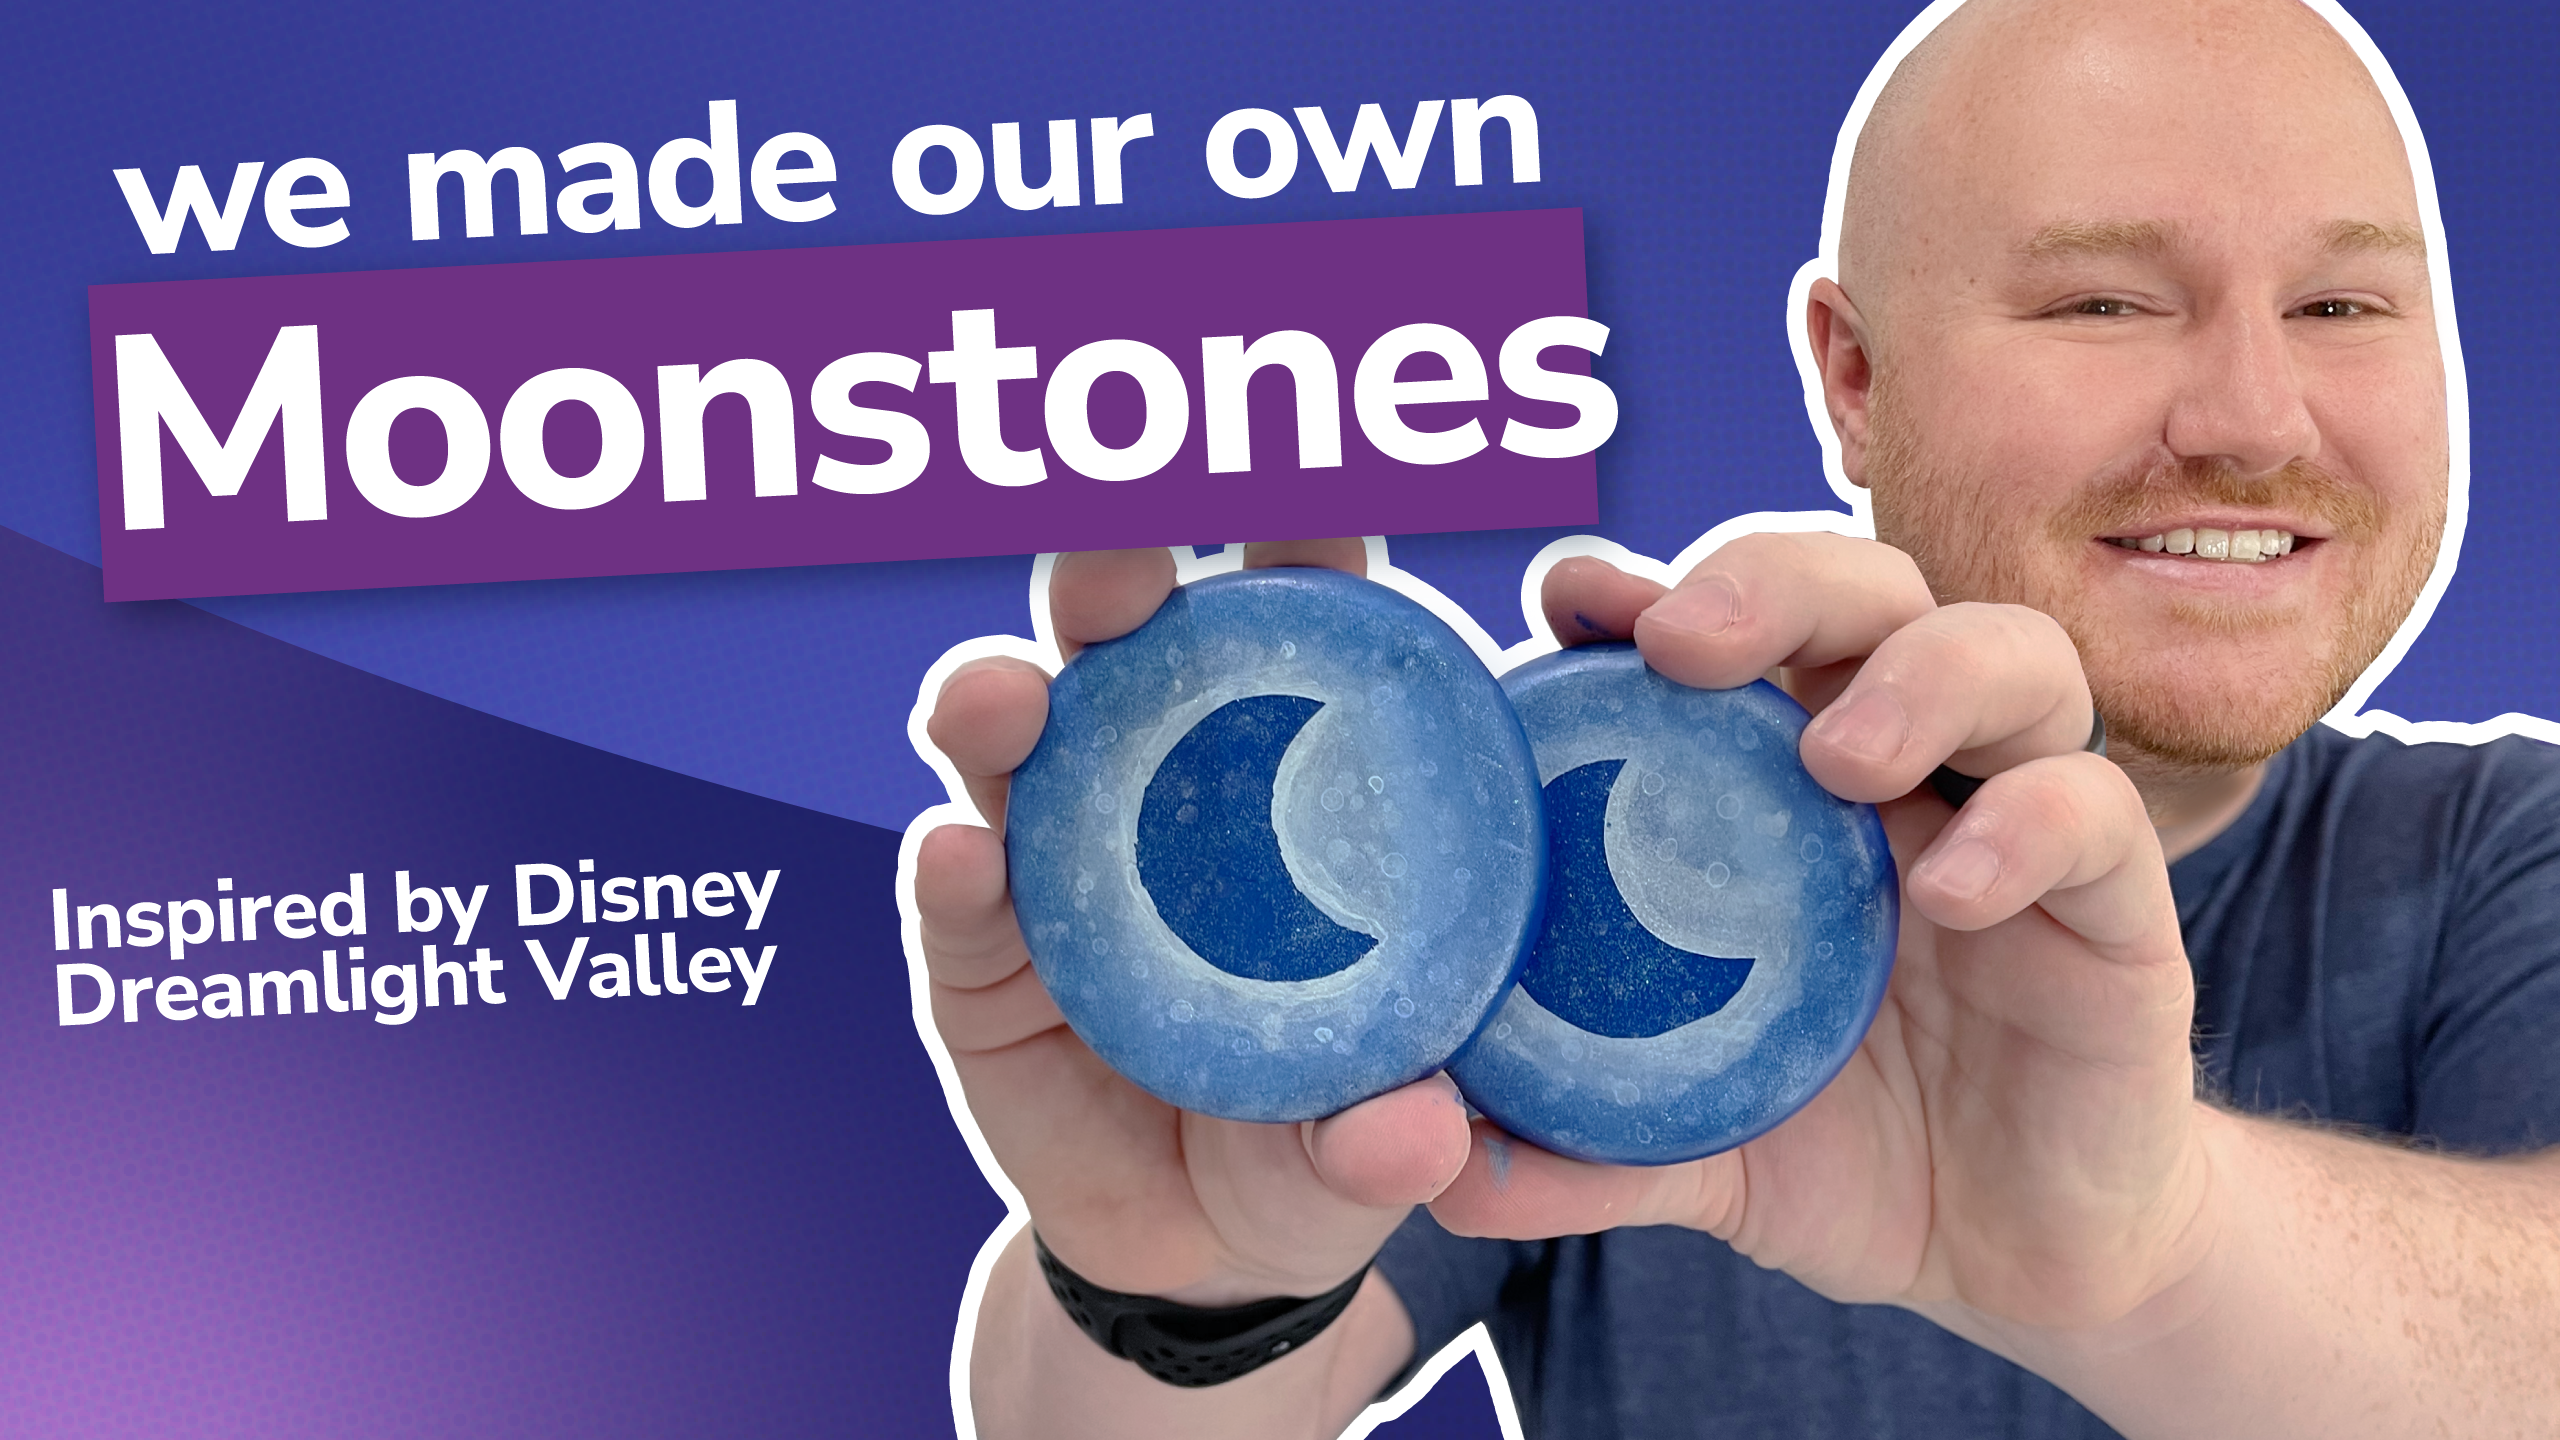 DIY Disney Dreamlight Valley Moonstones